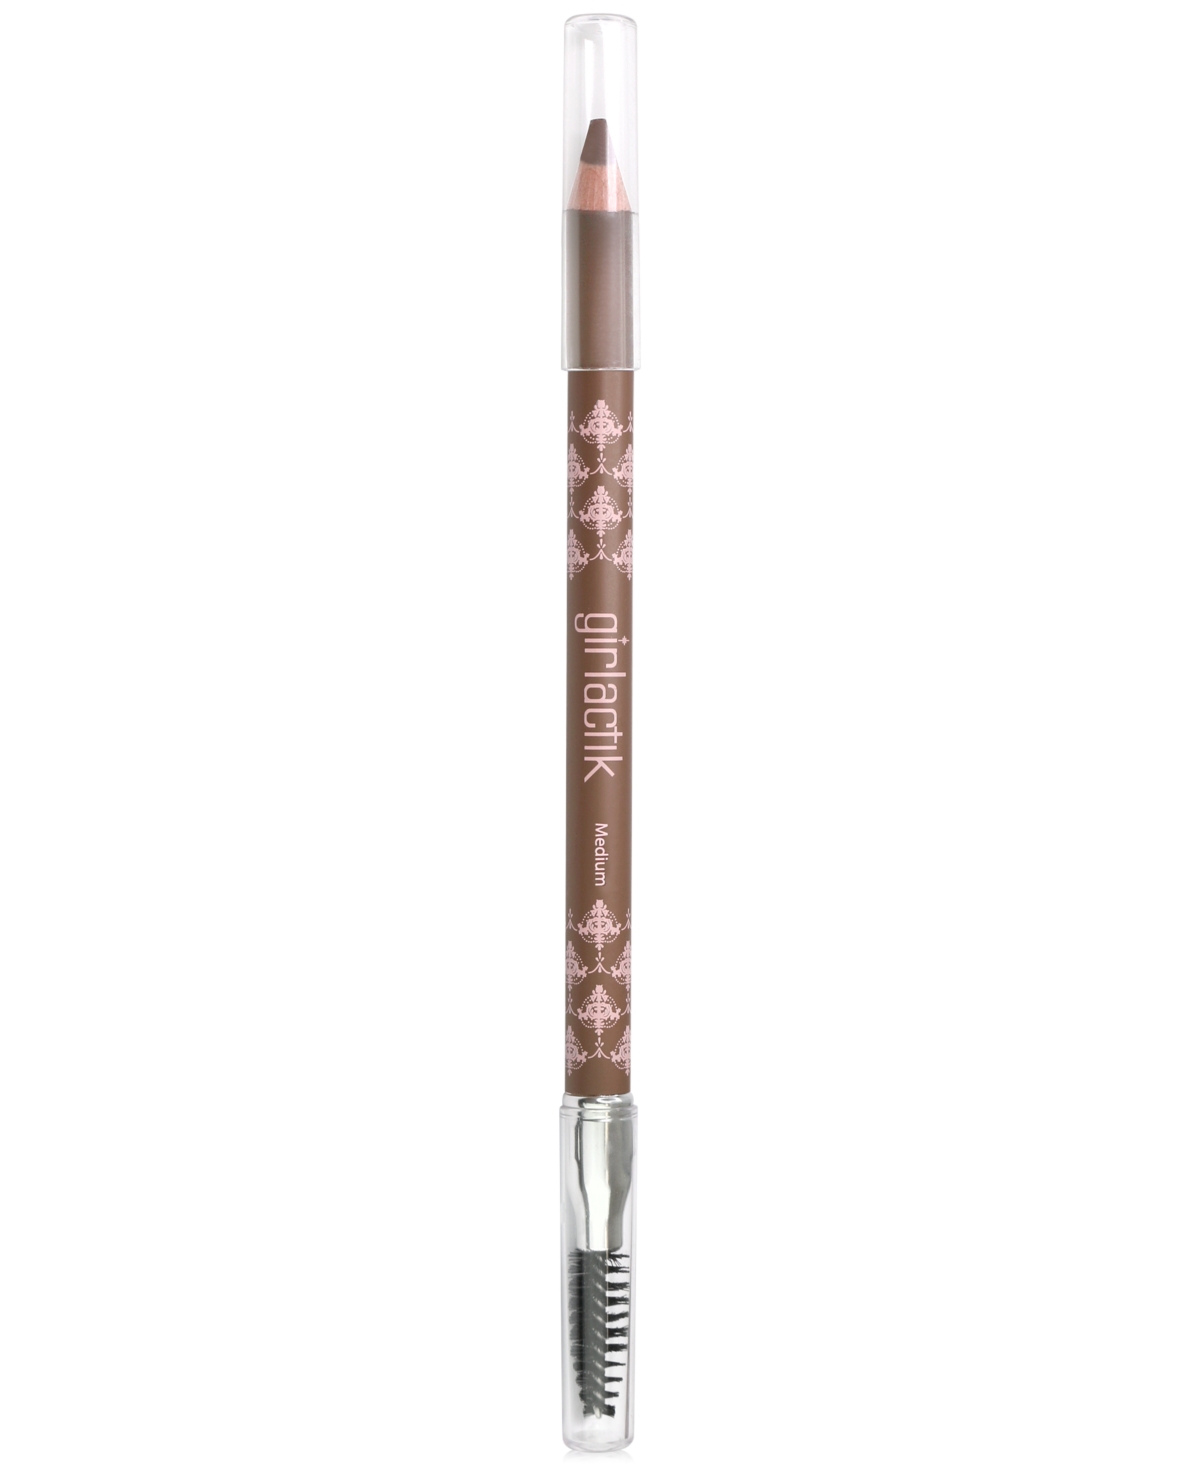 Soft Powder Eyebrow Pencil - Medium